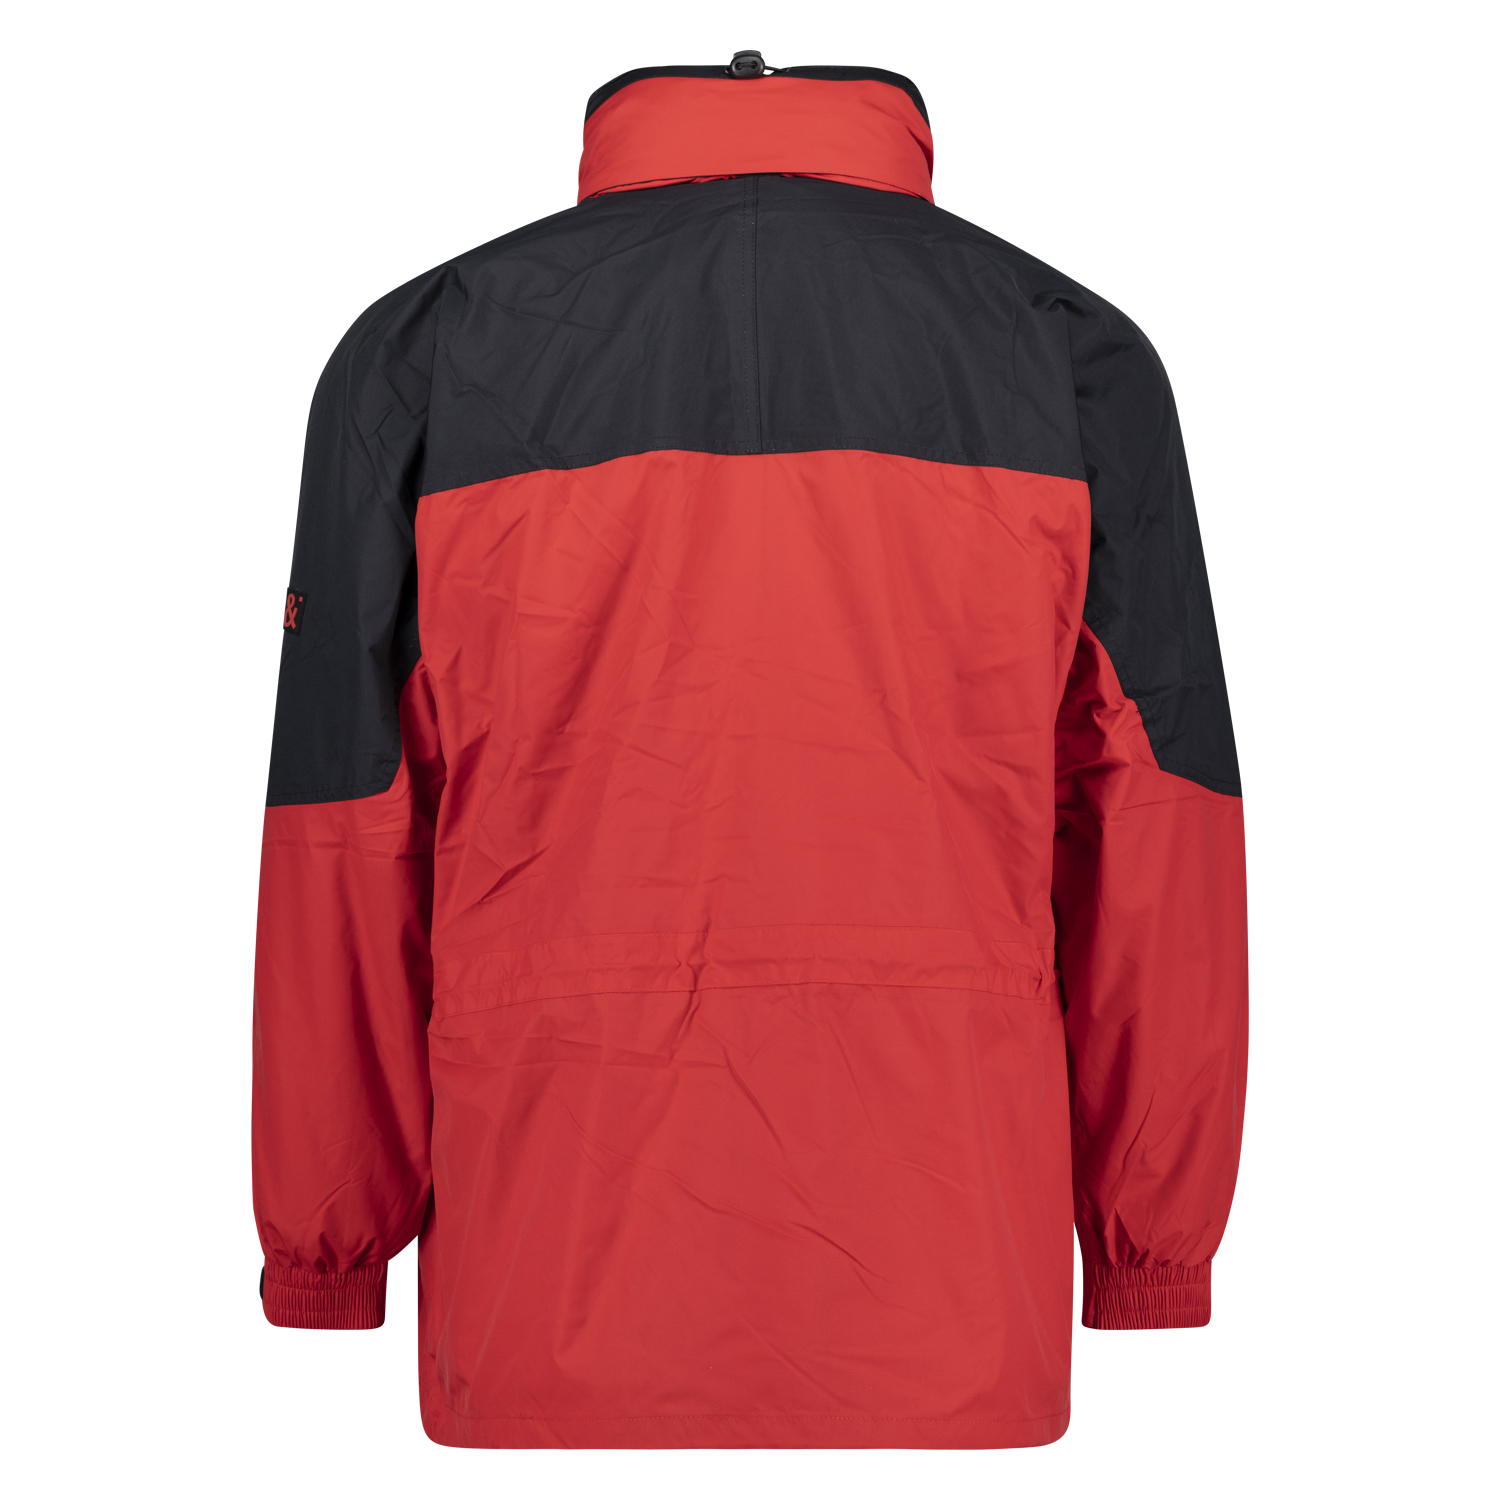 Rote 3in1 Jacke von marc&mark in großen Größen bis 10 XL